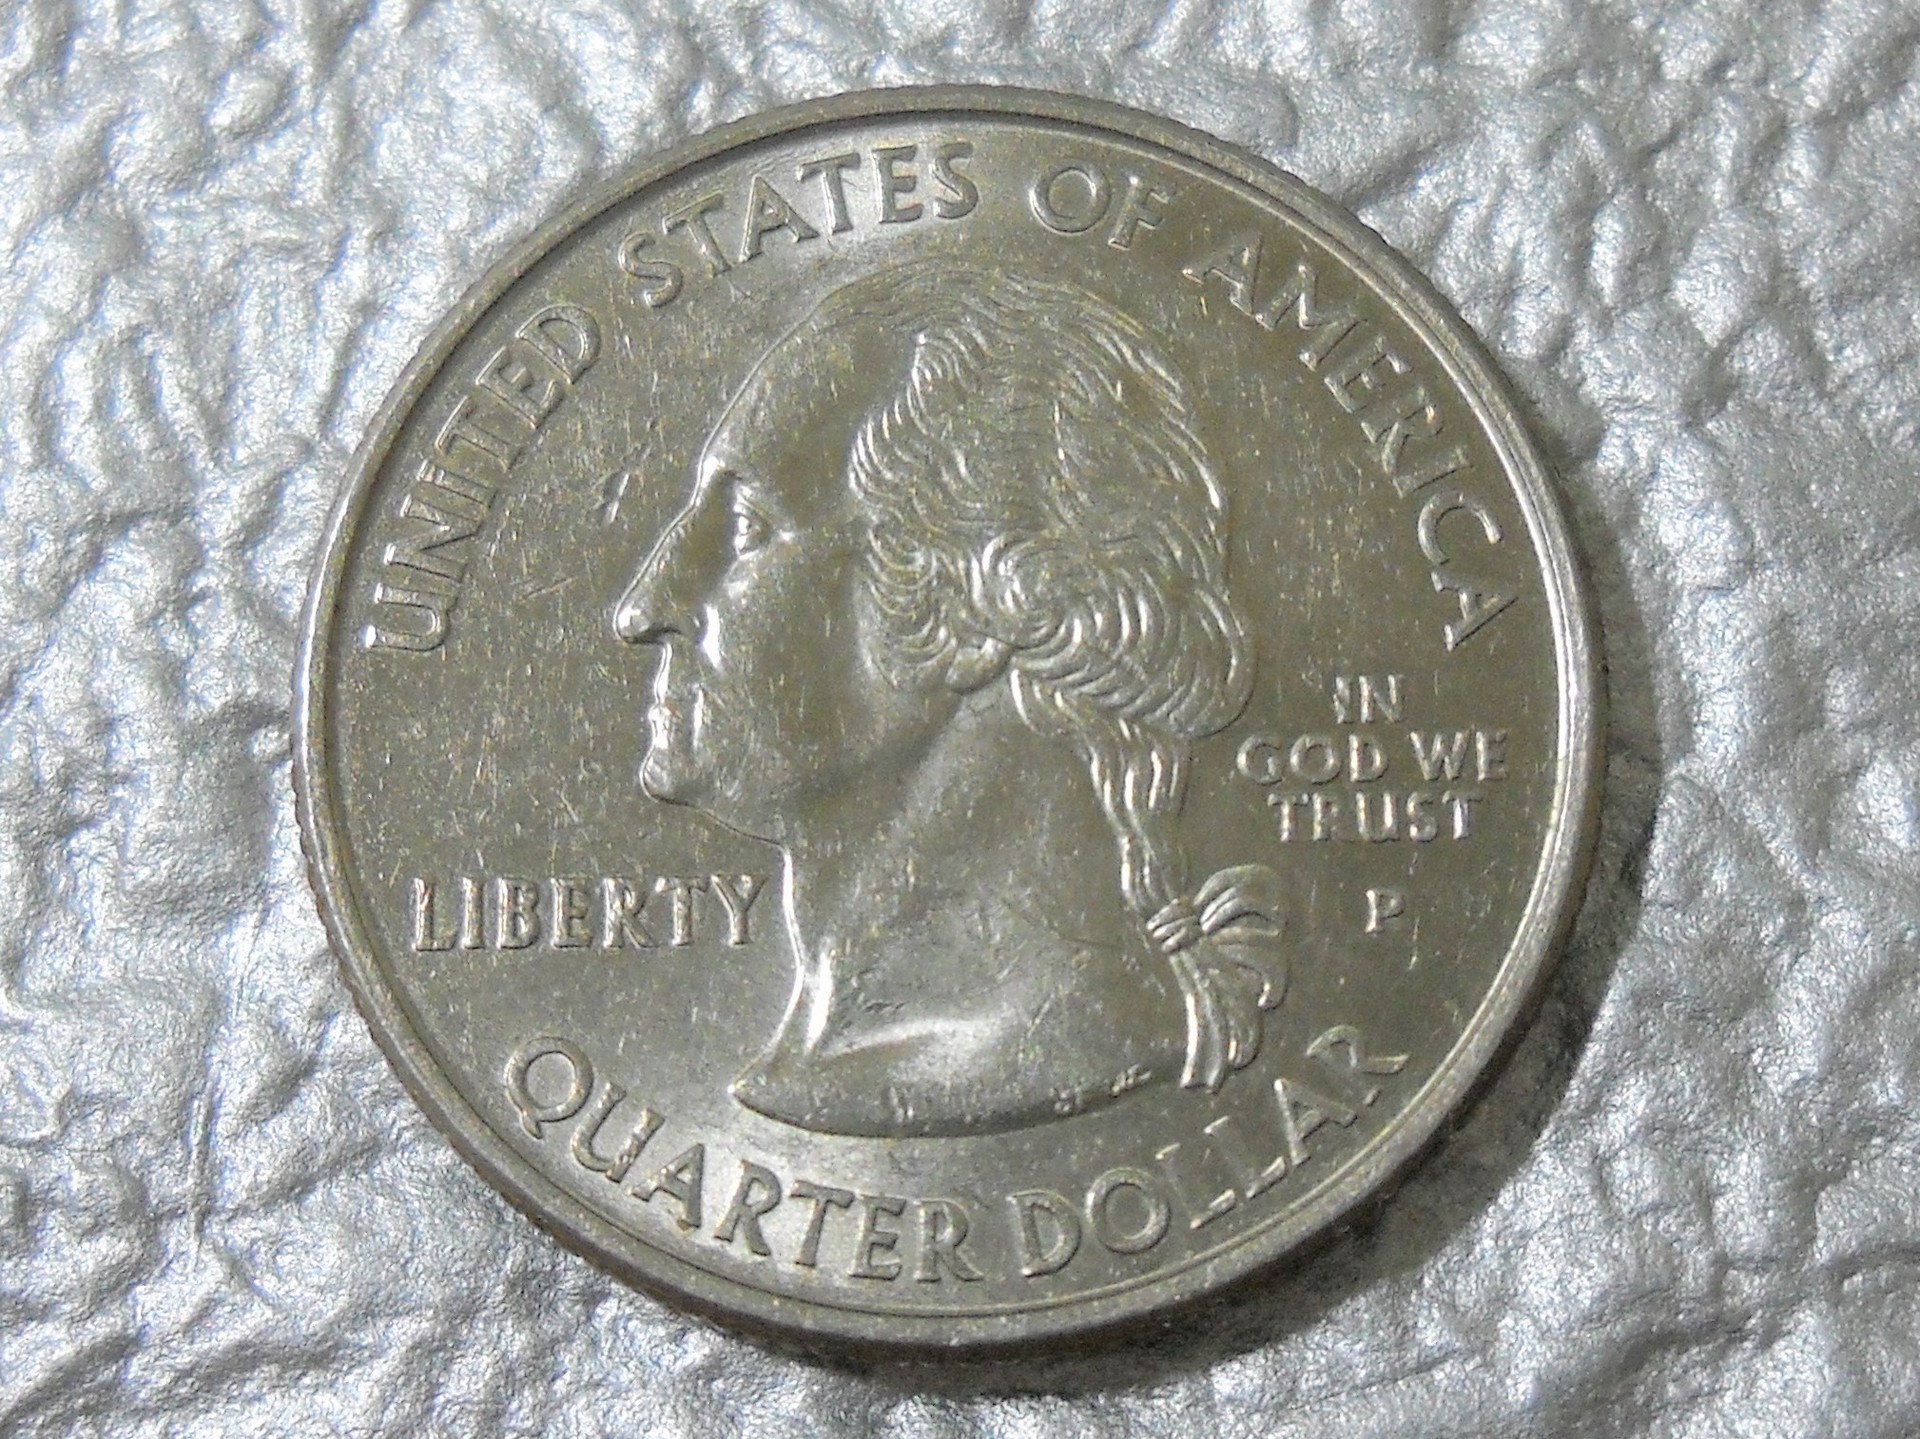 コレクションの記載 アメリカ合衆国 50州25セント硬貨プログラム メリーランド州 25セント コイン